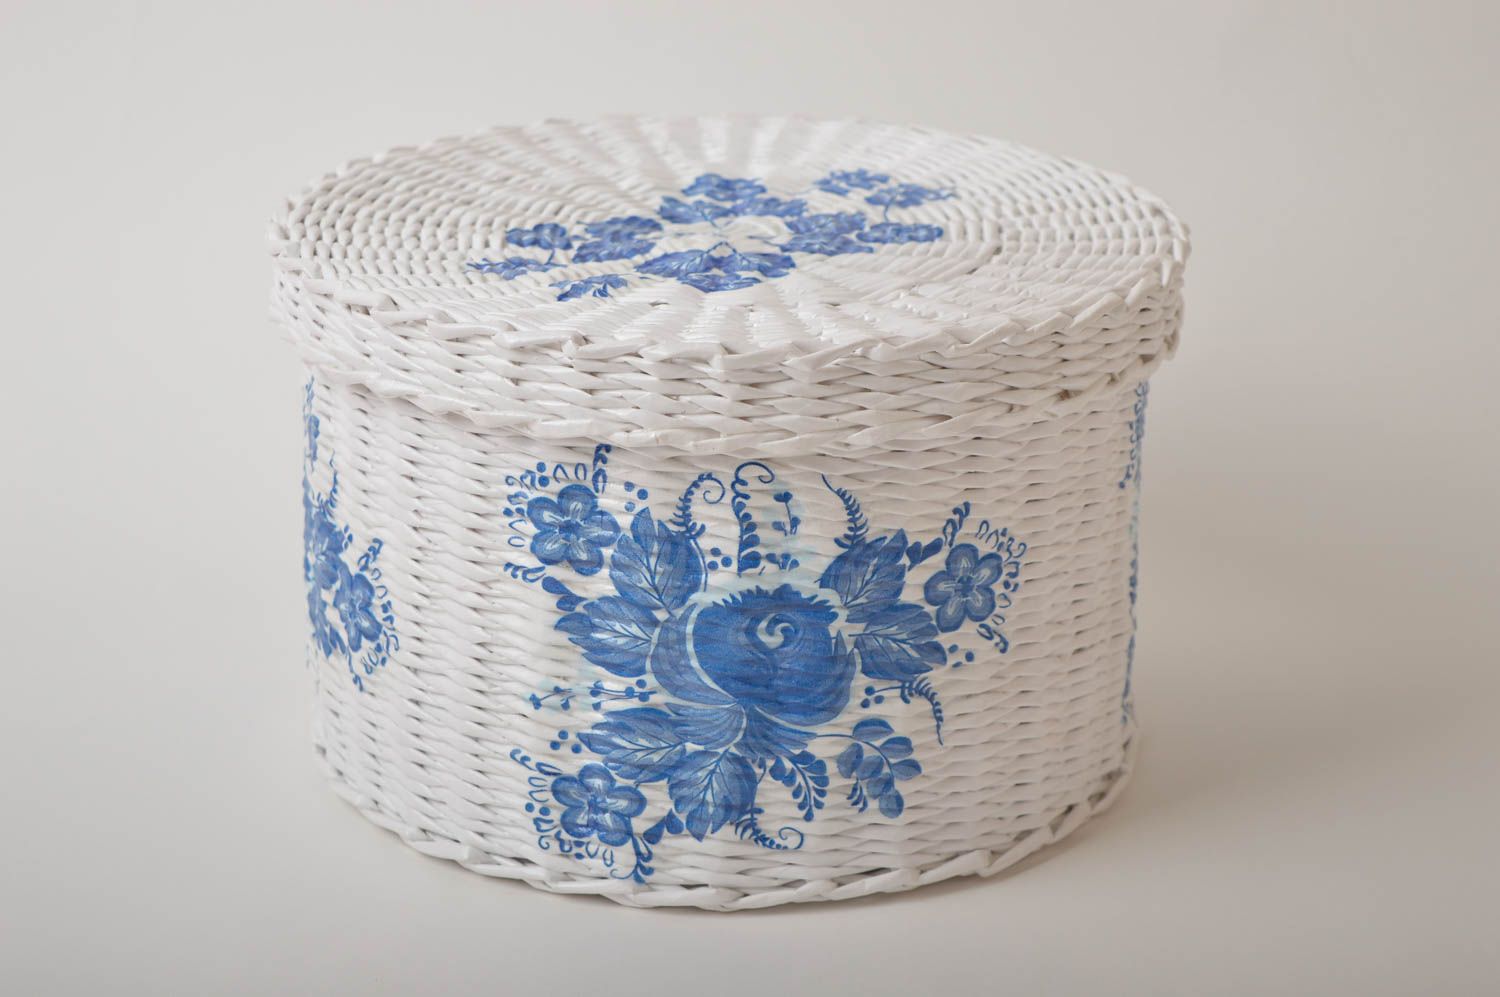 Homemade home decor woven basket small basket souvenir ideas gifts for women photo 2